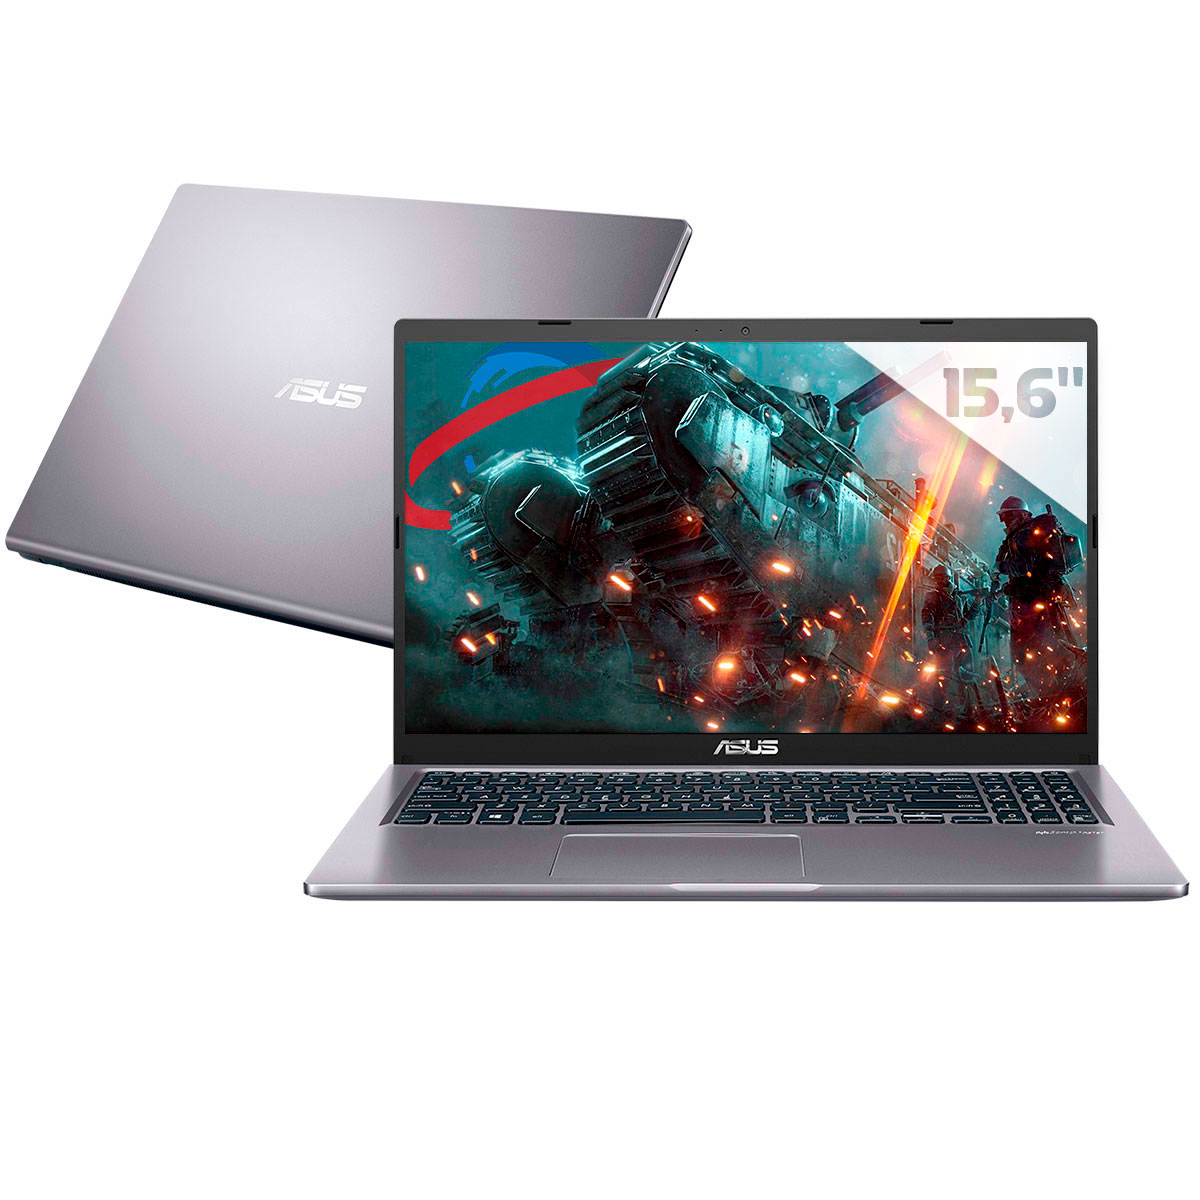 Notebook Asus X515JF-EJ153T - Intel i5 1035G1, RAM 8GB, SSD 256GB, GeForce MX130, Tela 15.6